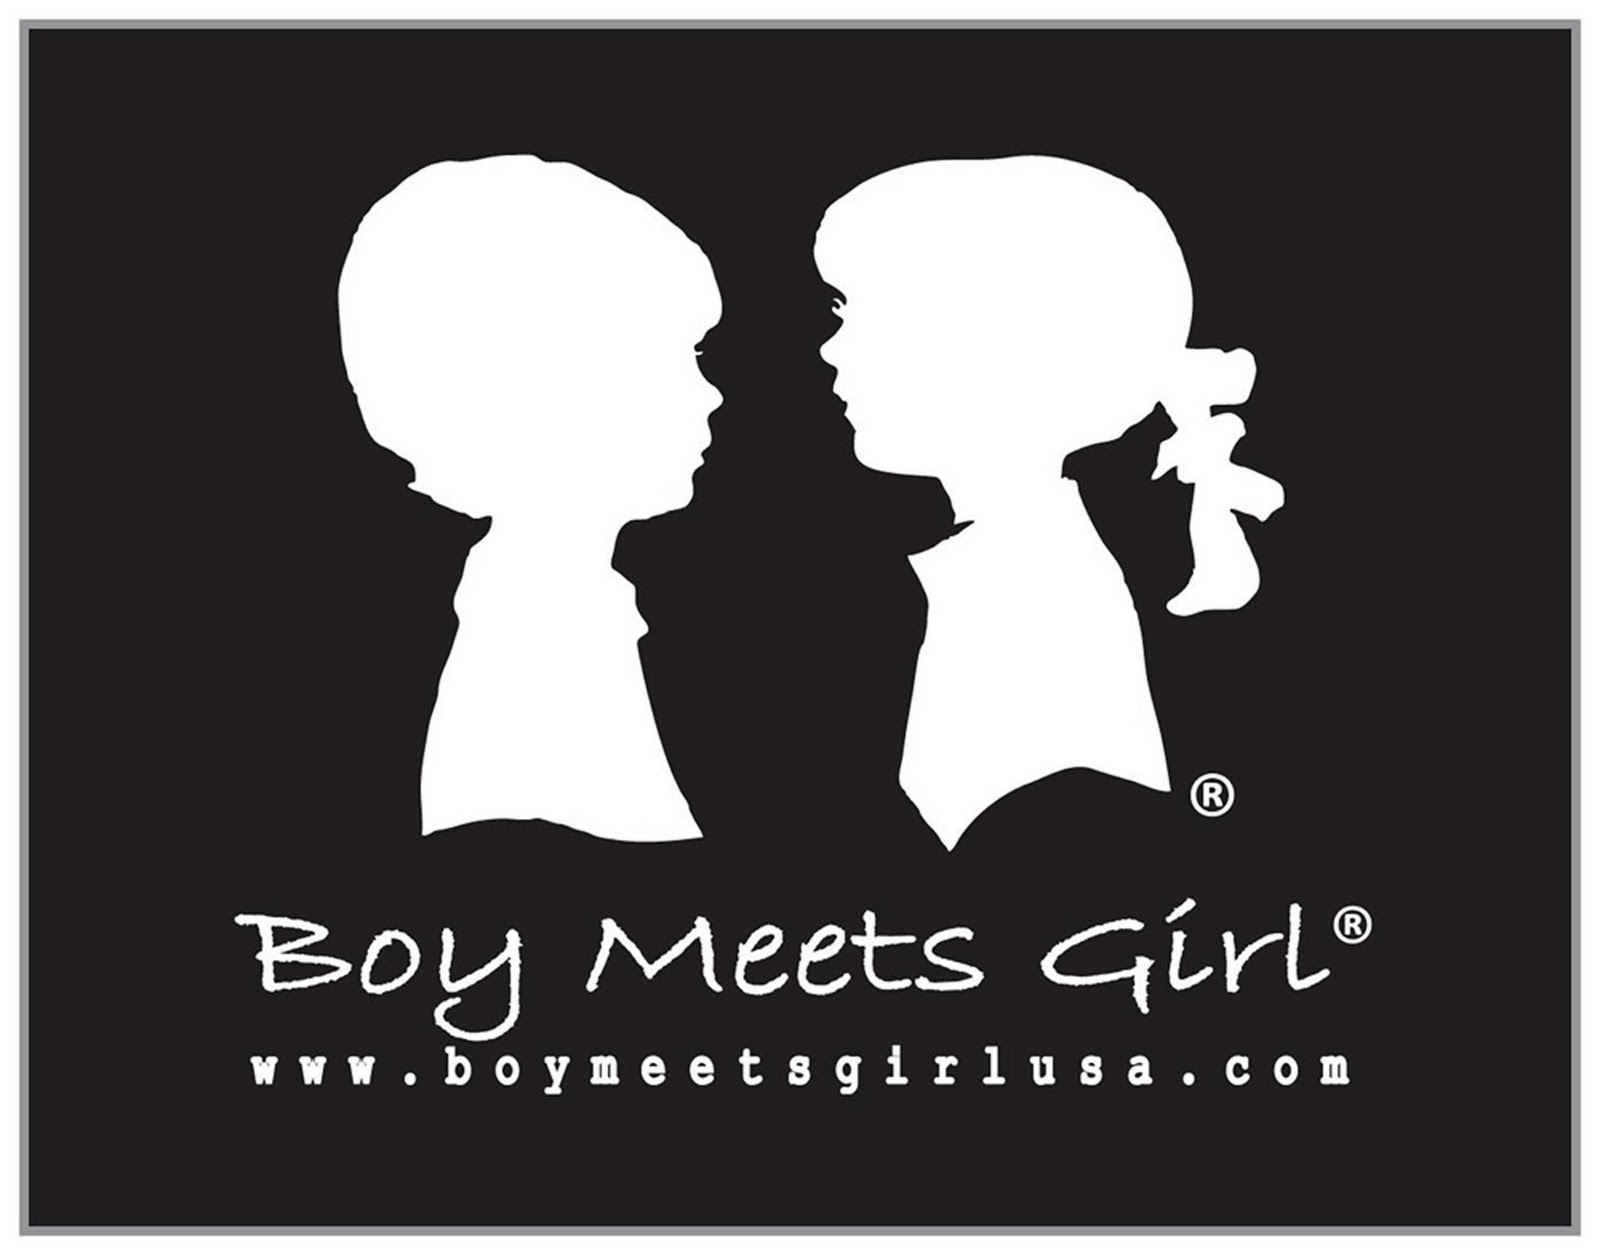 Meet my girl. Girl meets boy. Boy meets girl группа. Шоу boy meets girl.. Boy meets girl бренд.